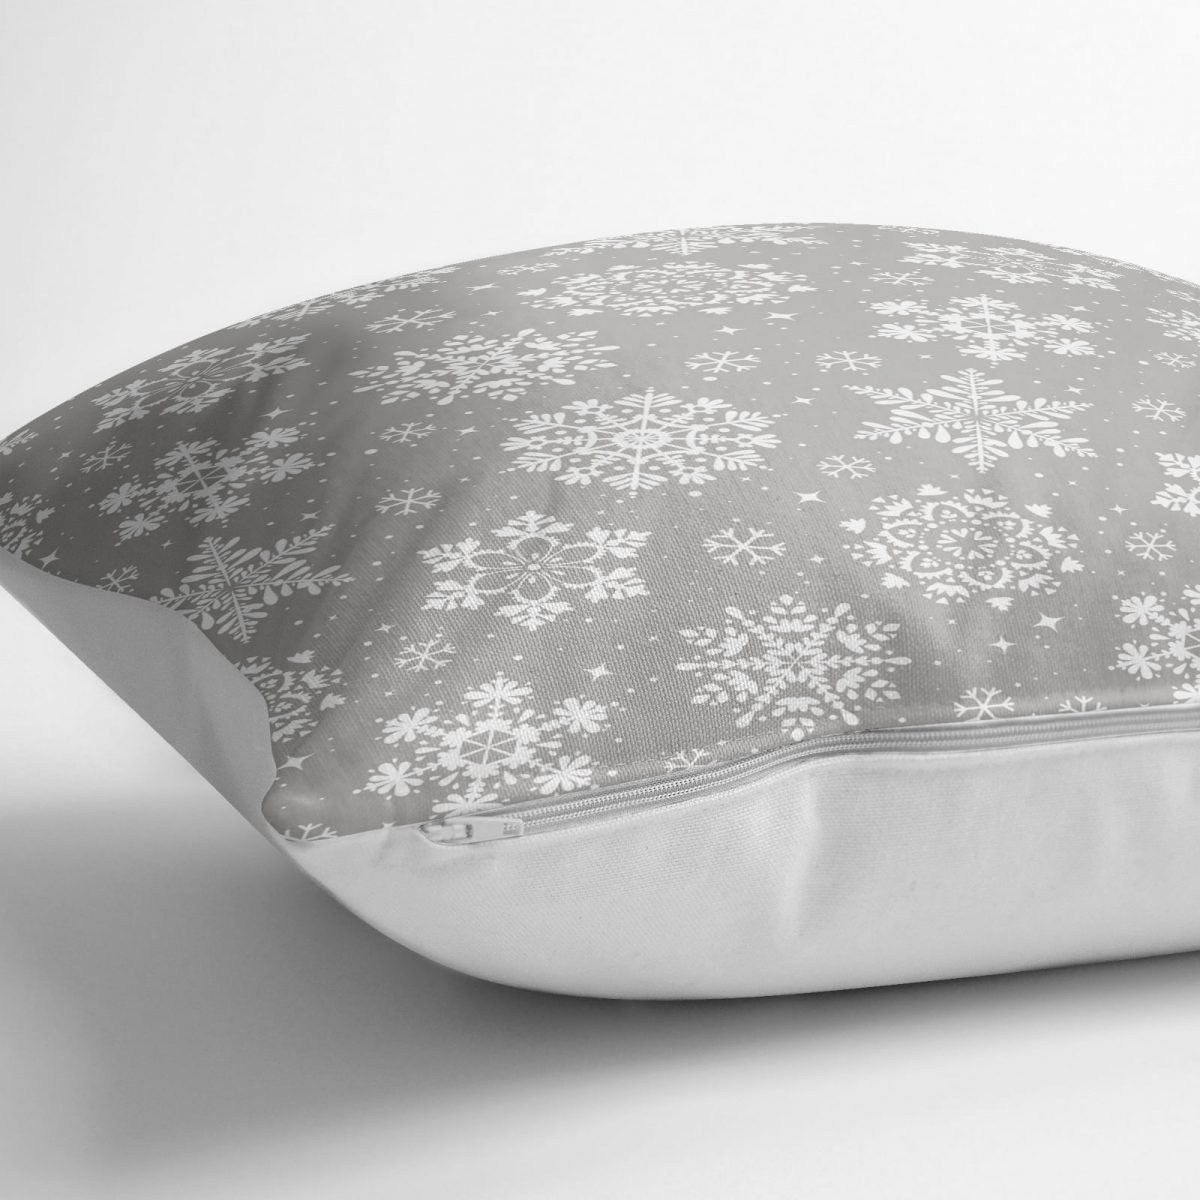 Gri Zeminli Kar Taneleri Temalı Modern Tasarım Dekoratif Yer Minderi - 70 x 70 cm Realhomes